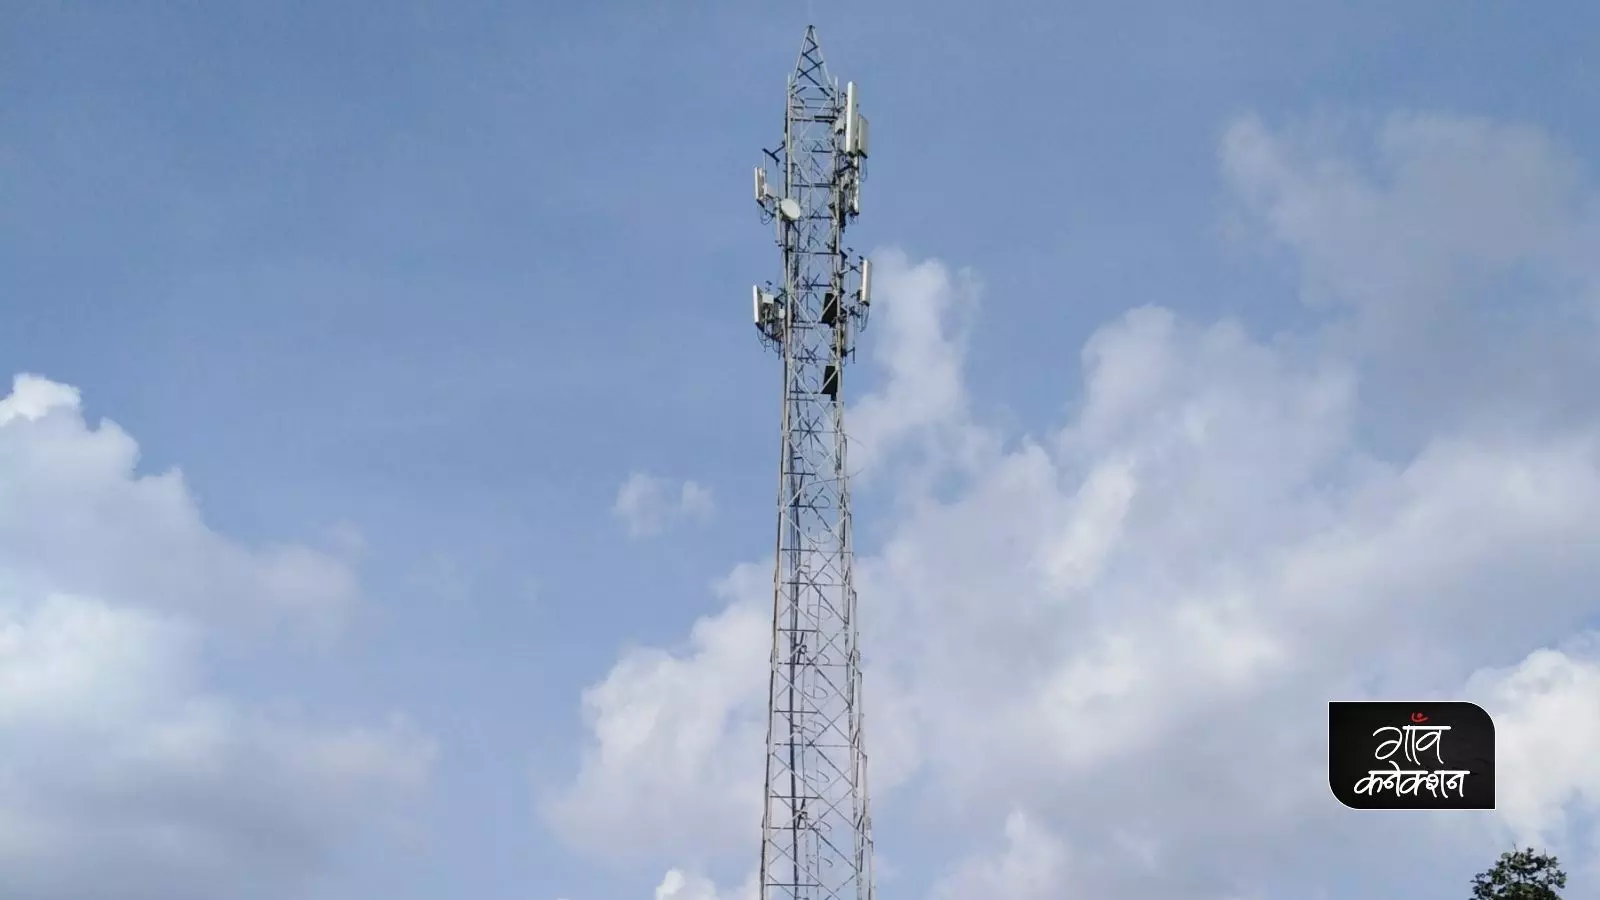 क्या डिजिटल इंडिया के तहत ग्राम पंचायतों में लगवाए जा रहे हैं मोबाइल टावर? जानिए सच्चाई